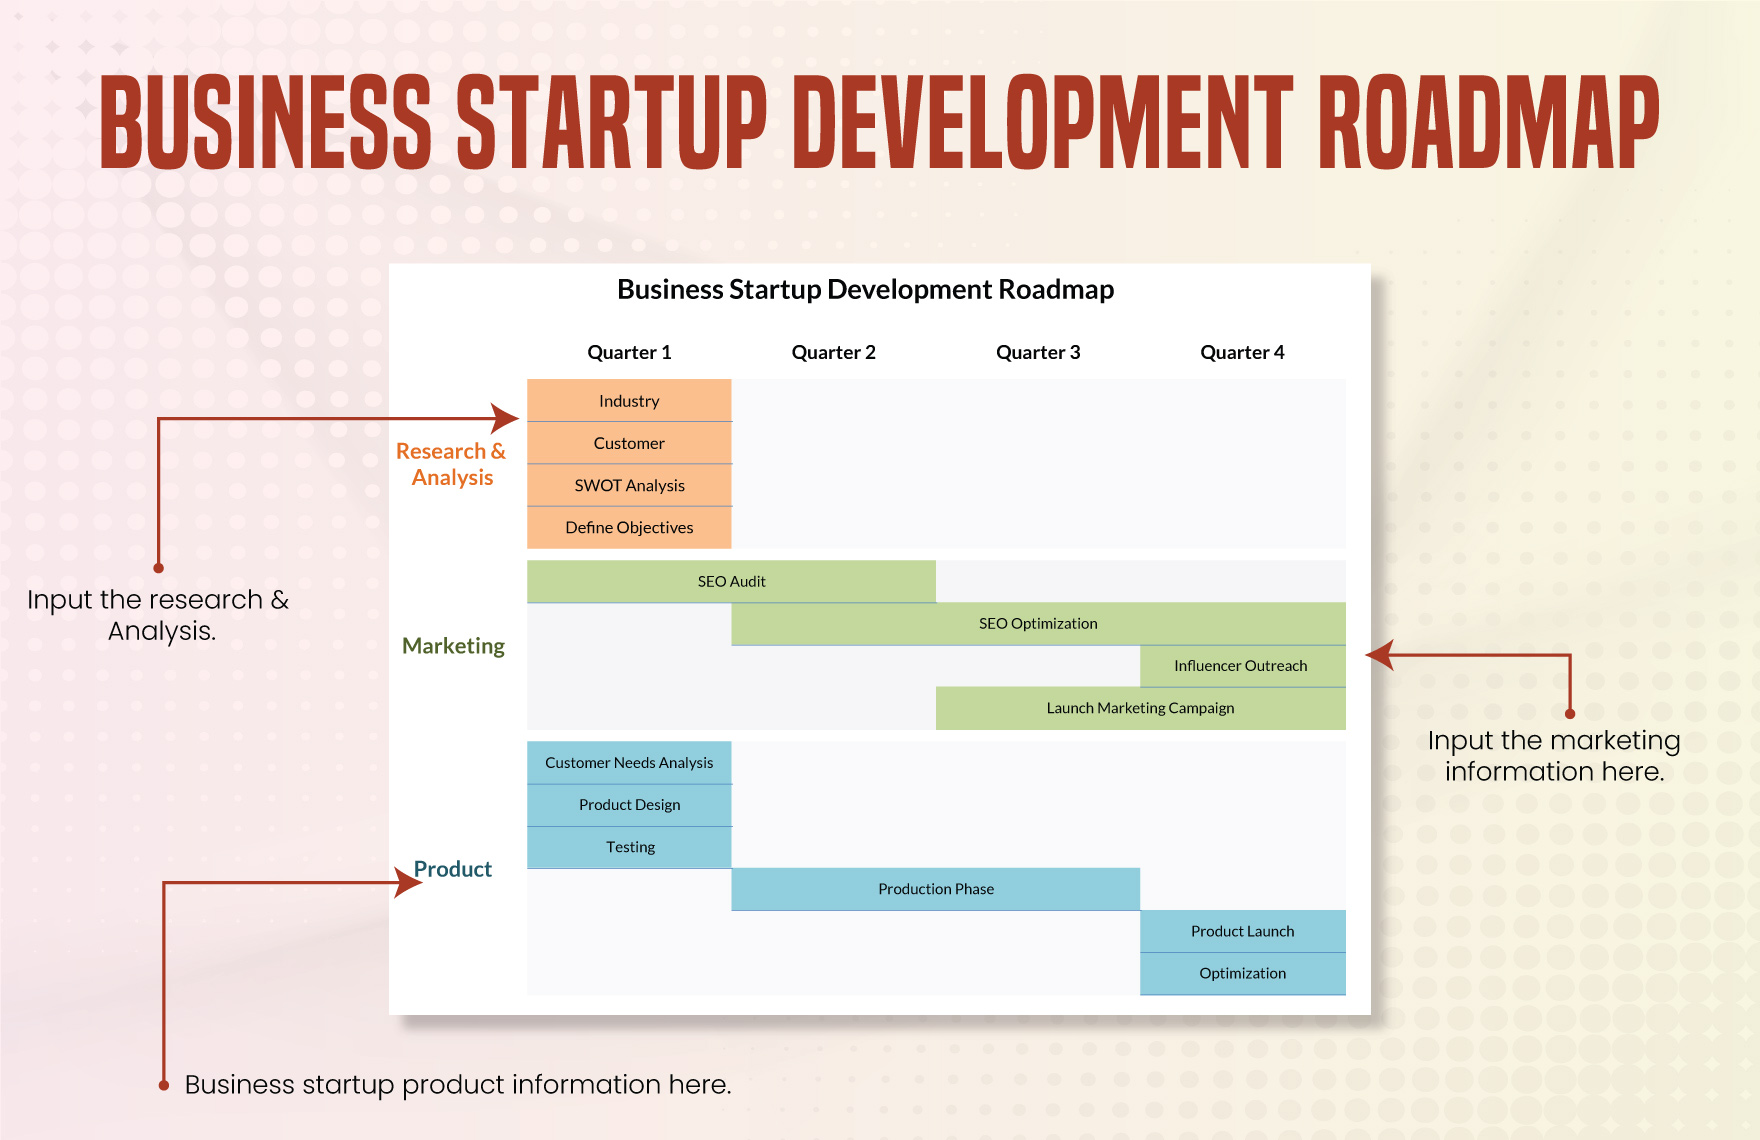 Business Startup Development Roadmap Template